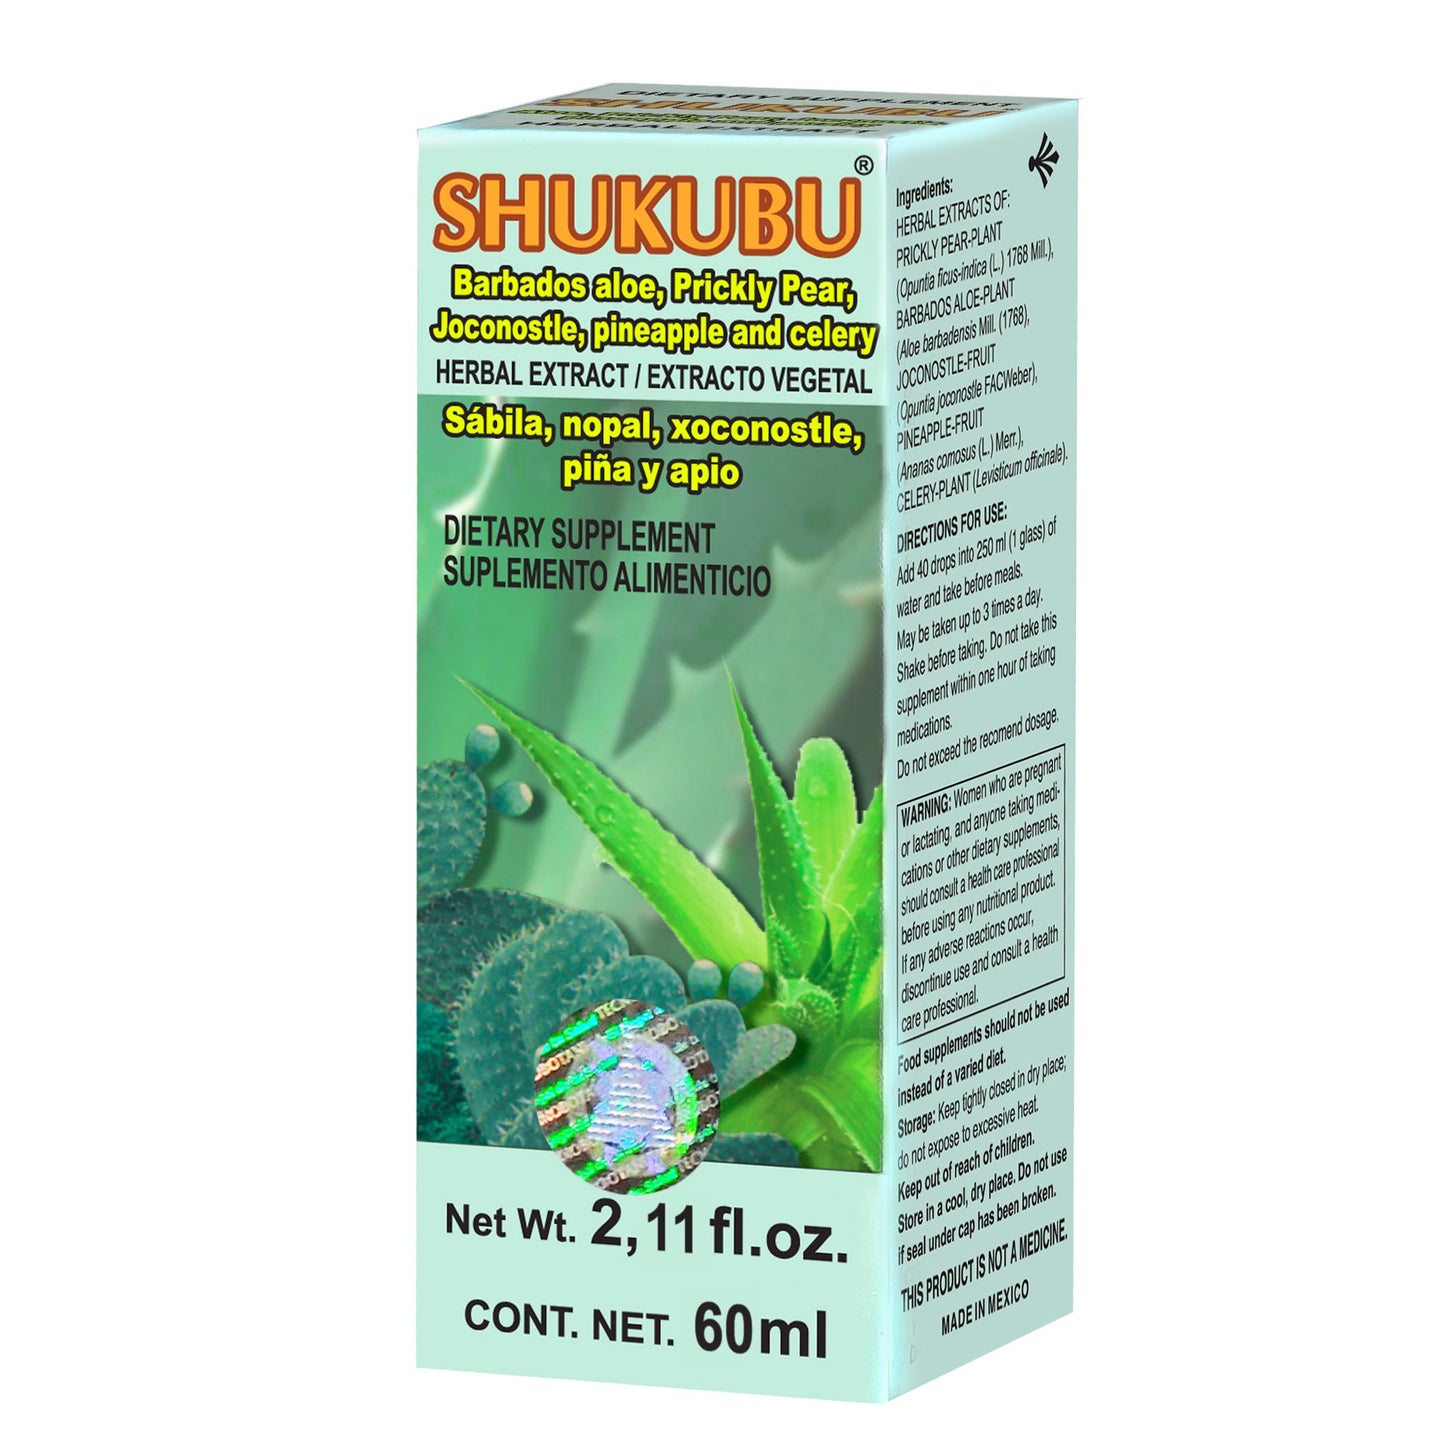 SHUKUBU ® extracto vegetal 60ml